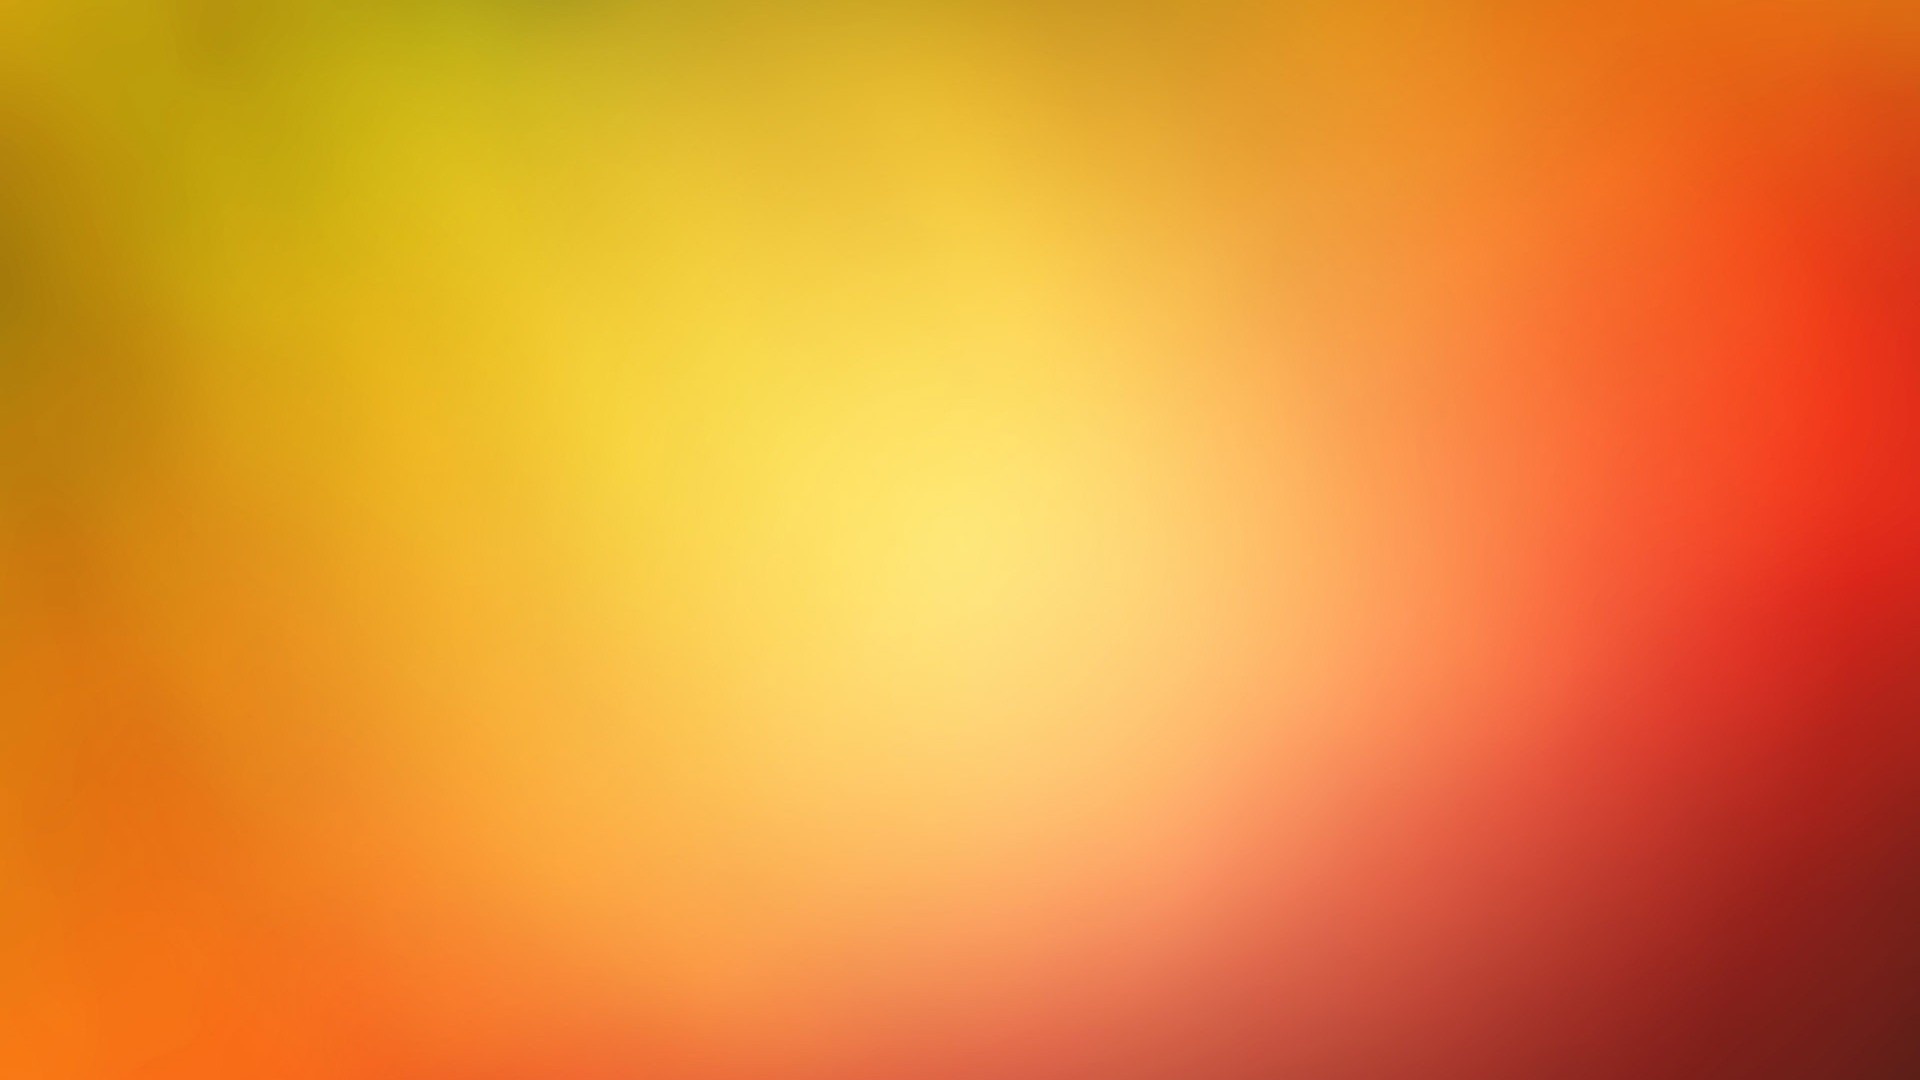 einfarbiges hintergrundbild kostenloser download,orange,gelb,rot,bernstein,himmel